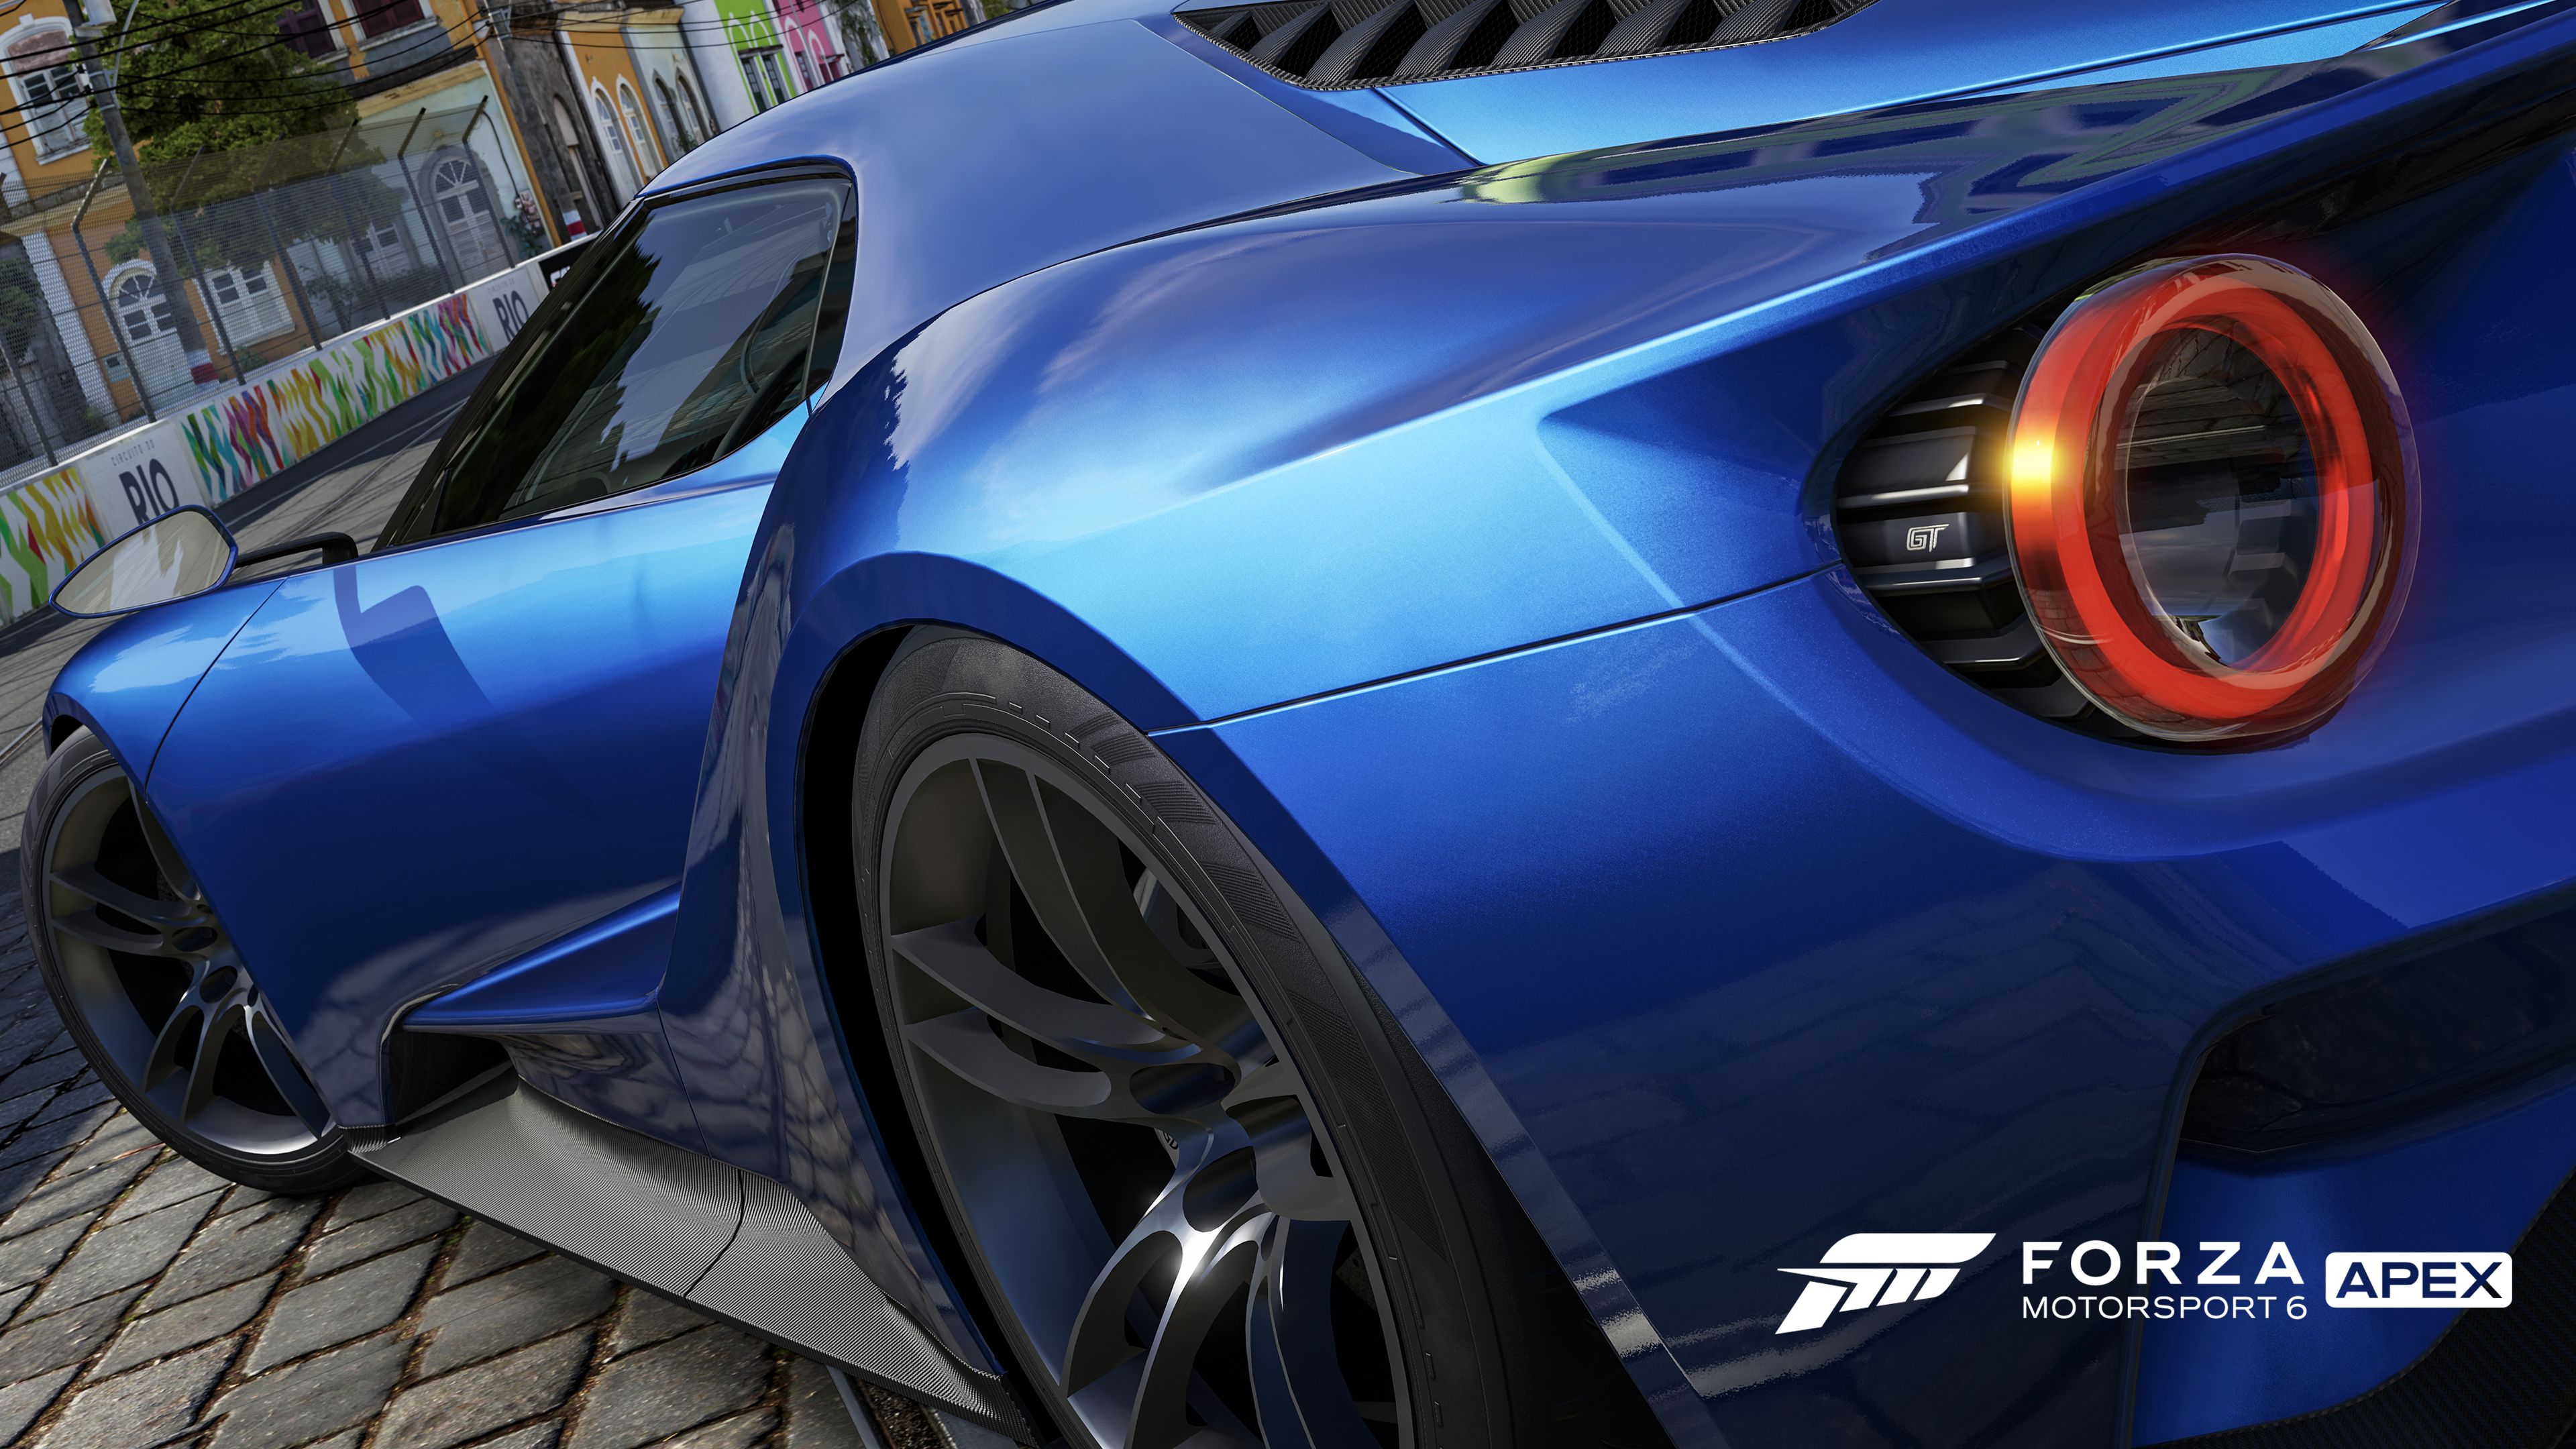 Скачать обои Forza Motorsport 6: Апекс на телефон бесплатно